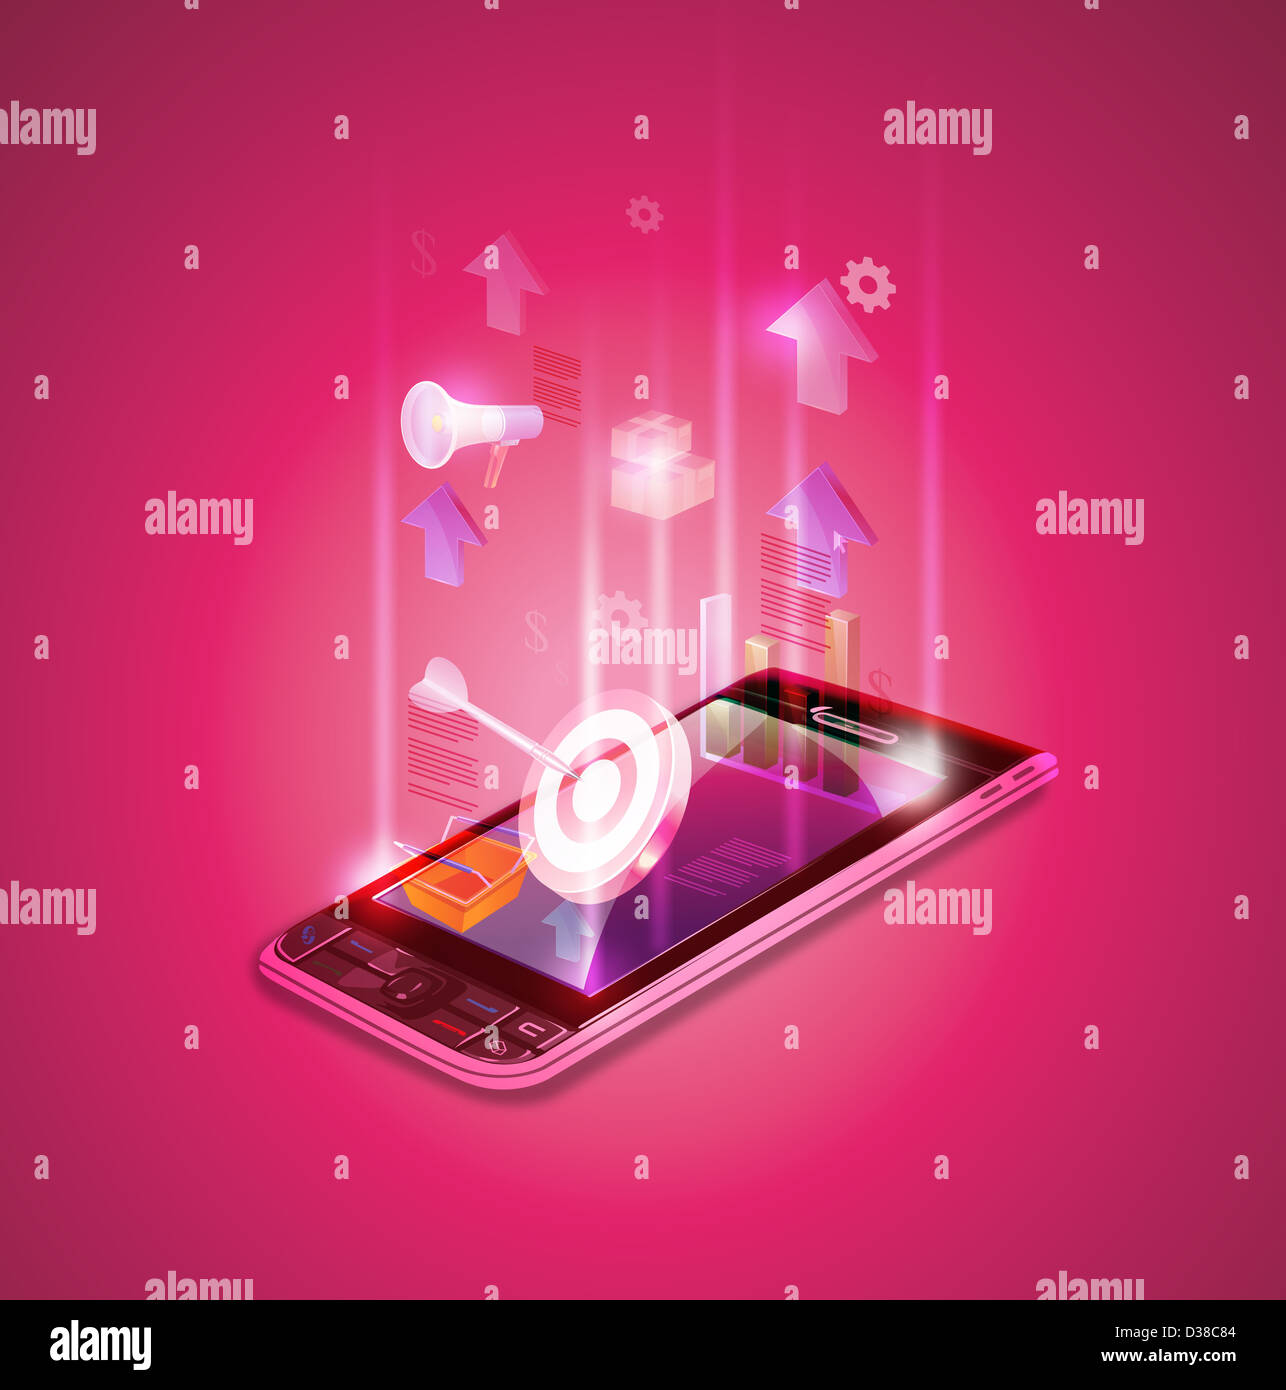 Immagine illustrativa del telefono mobile che rappresenta i dati finanziari Foto Stock